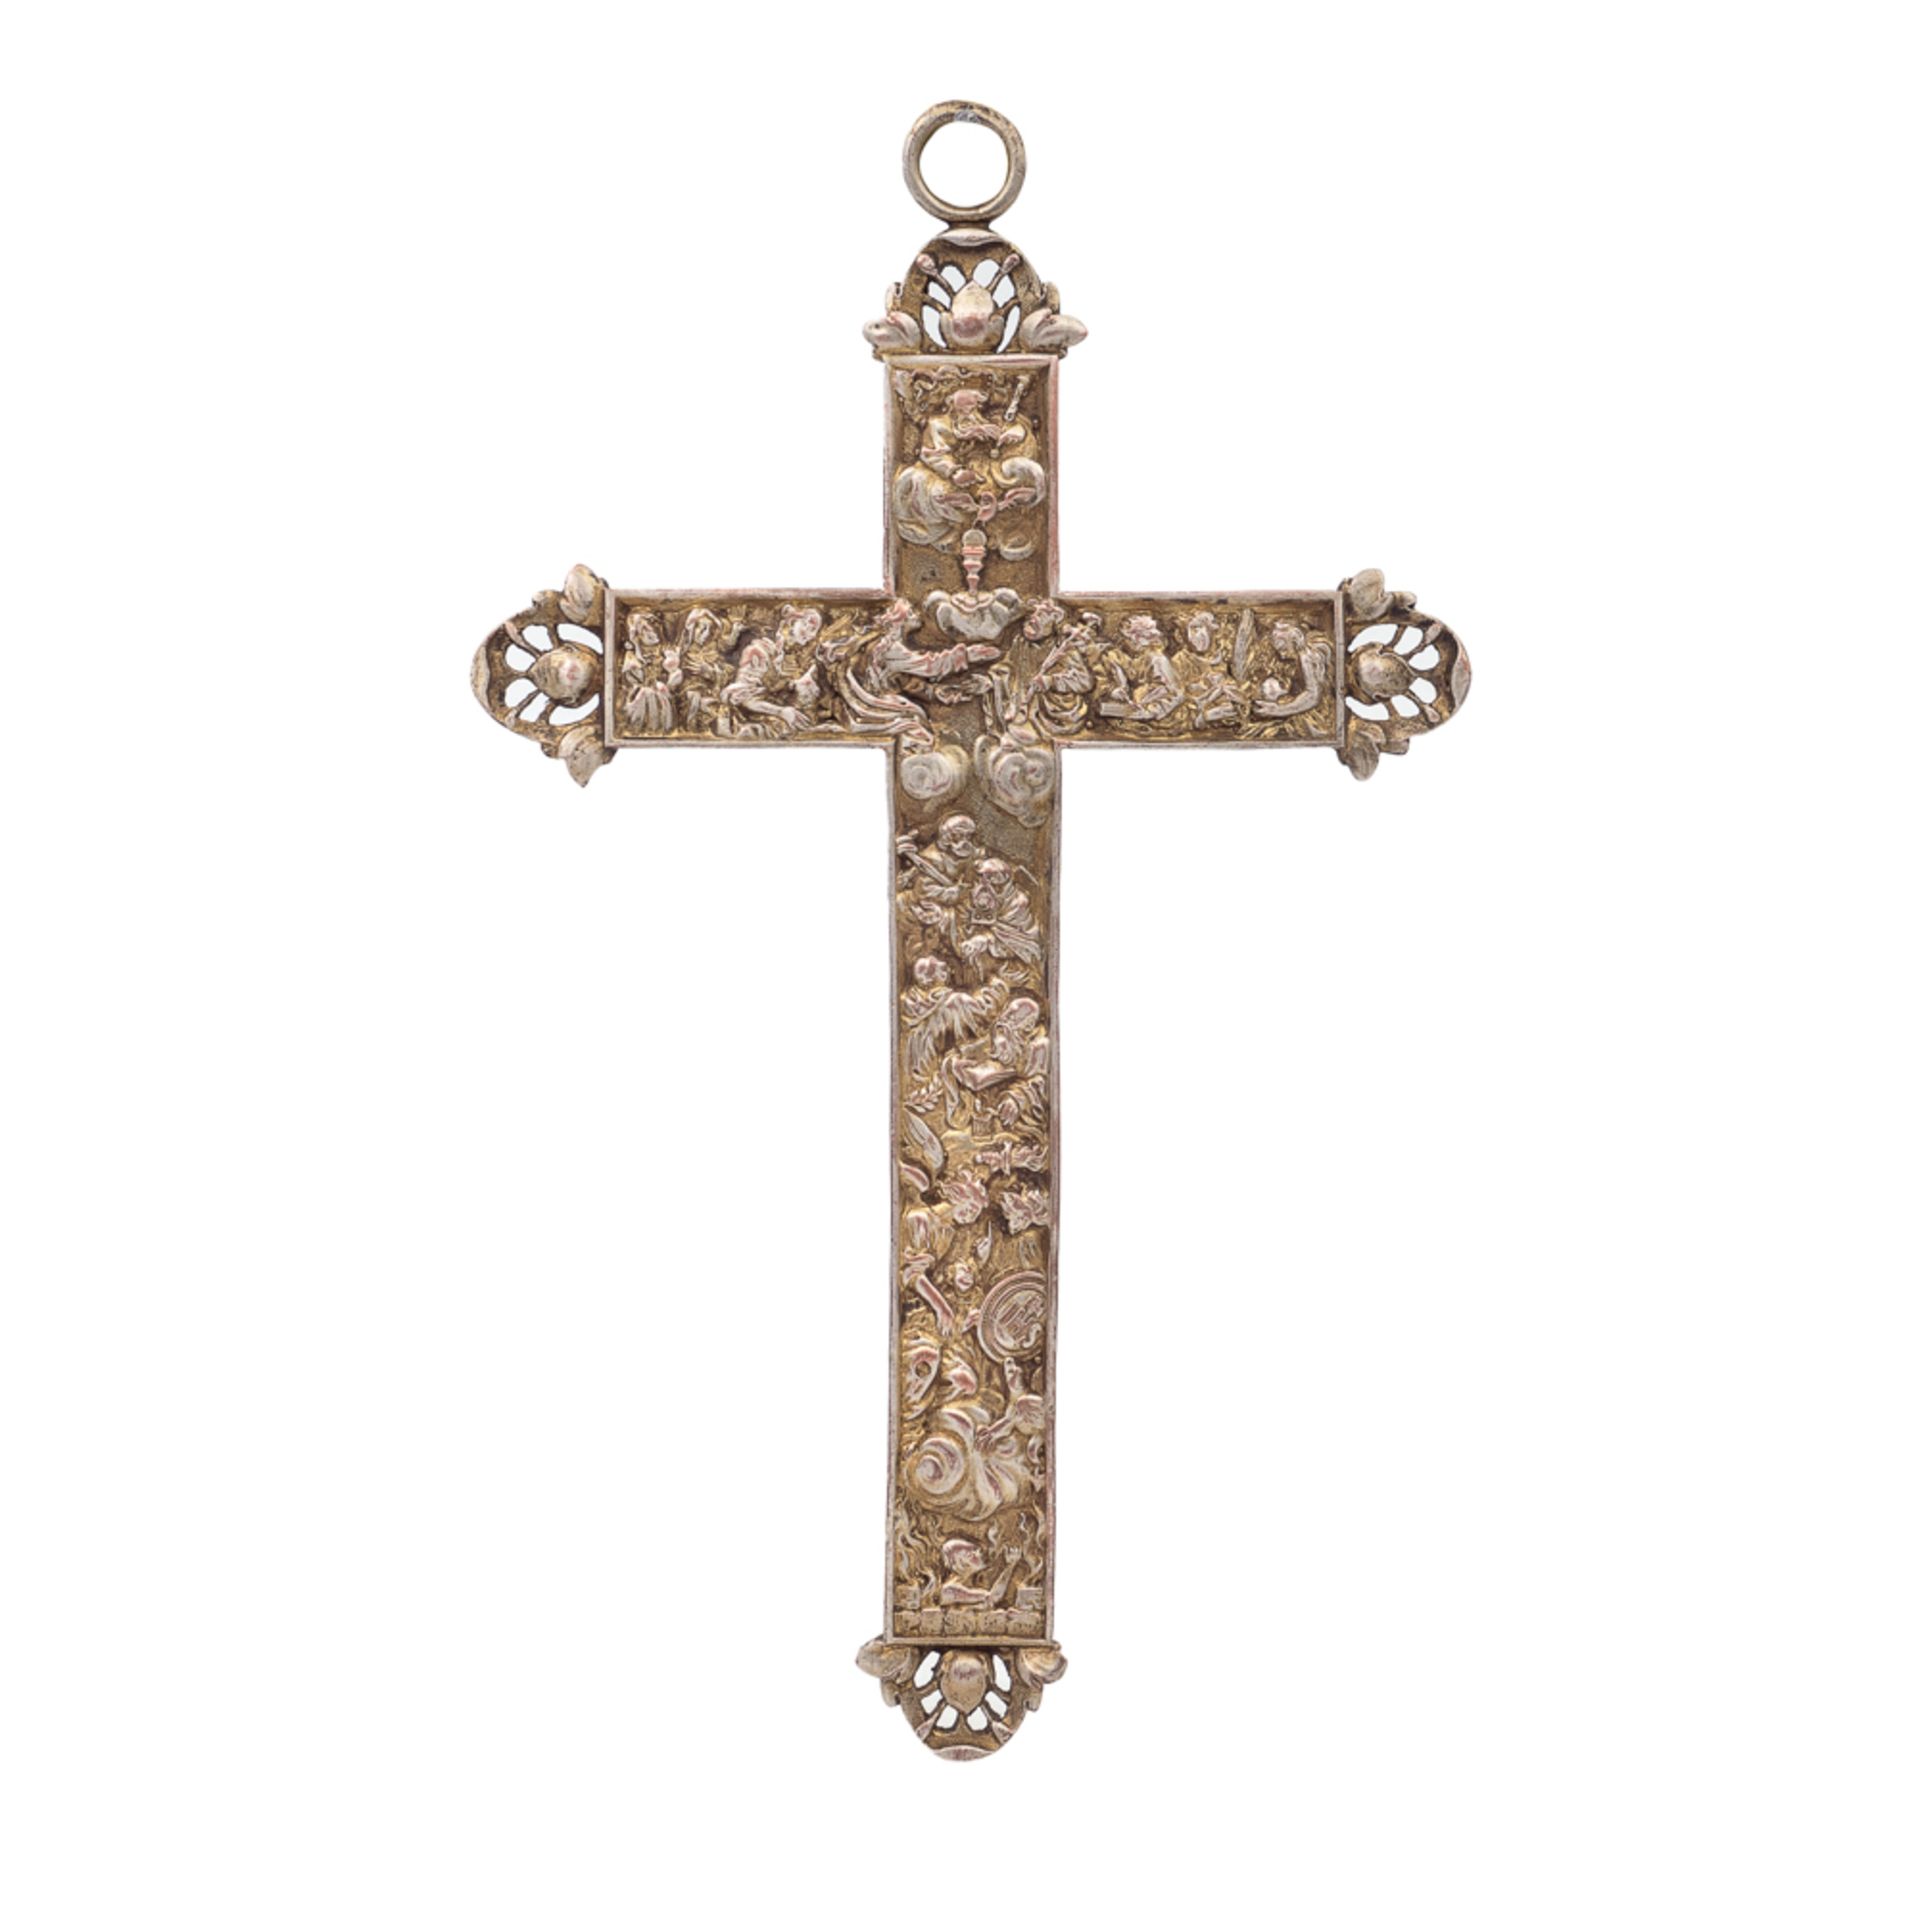 Antique gilded metal cross